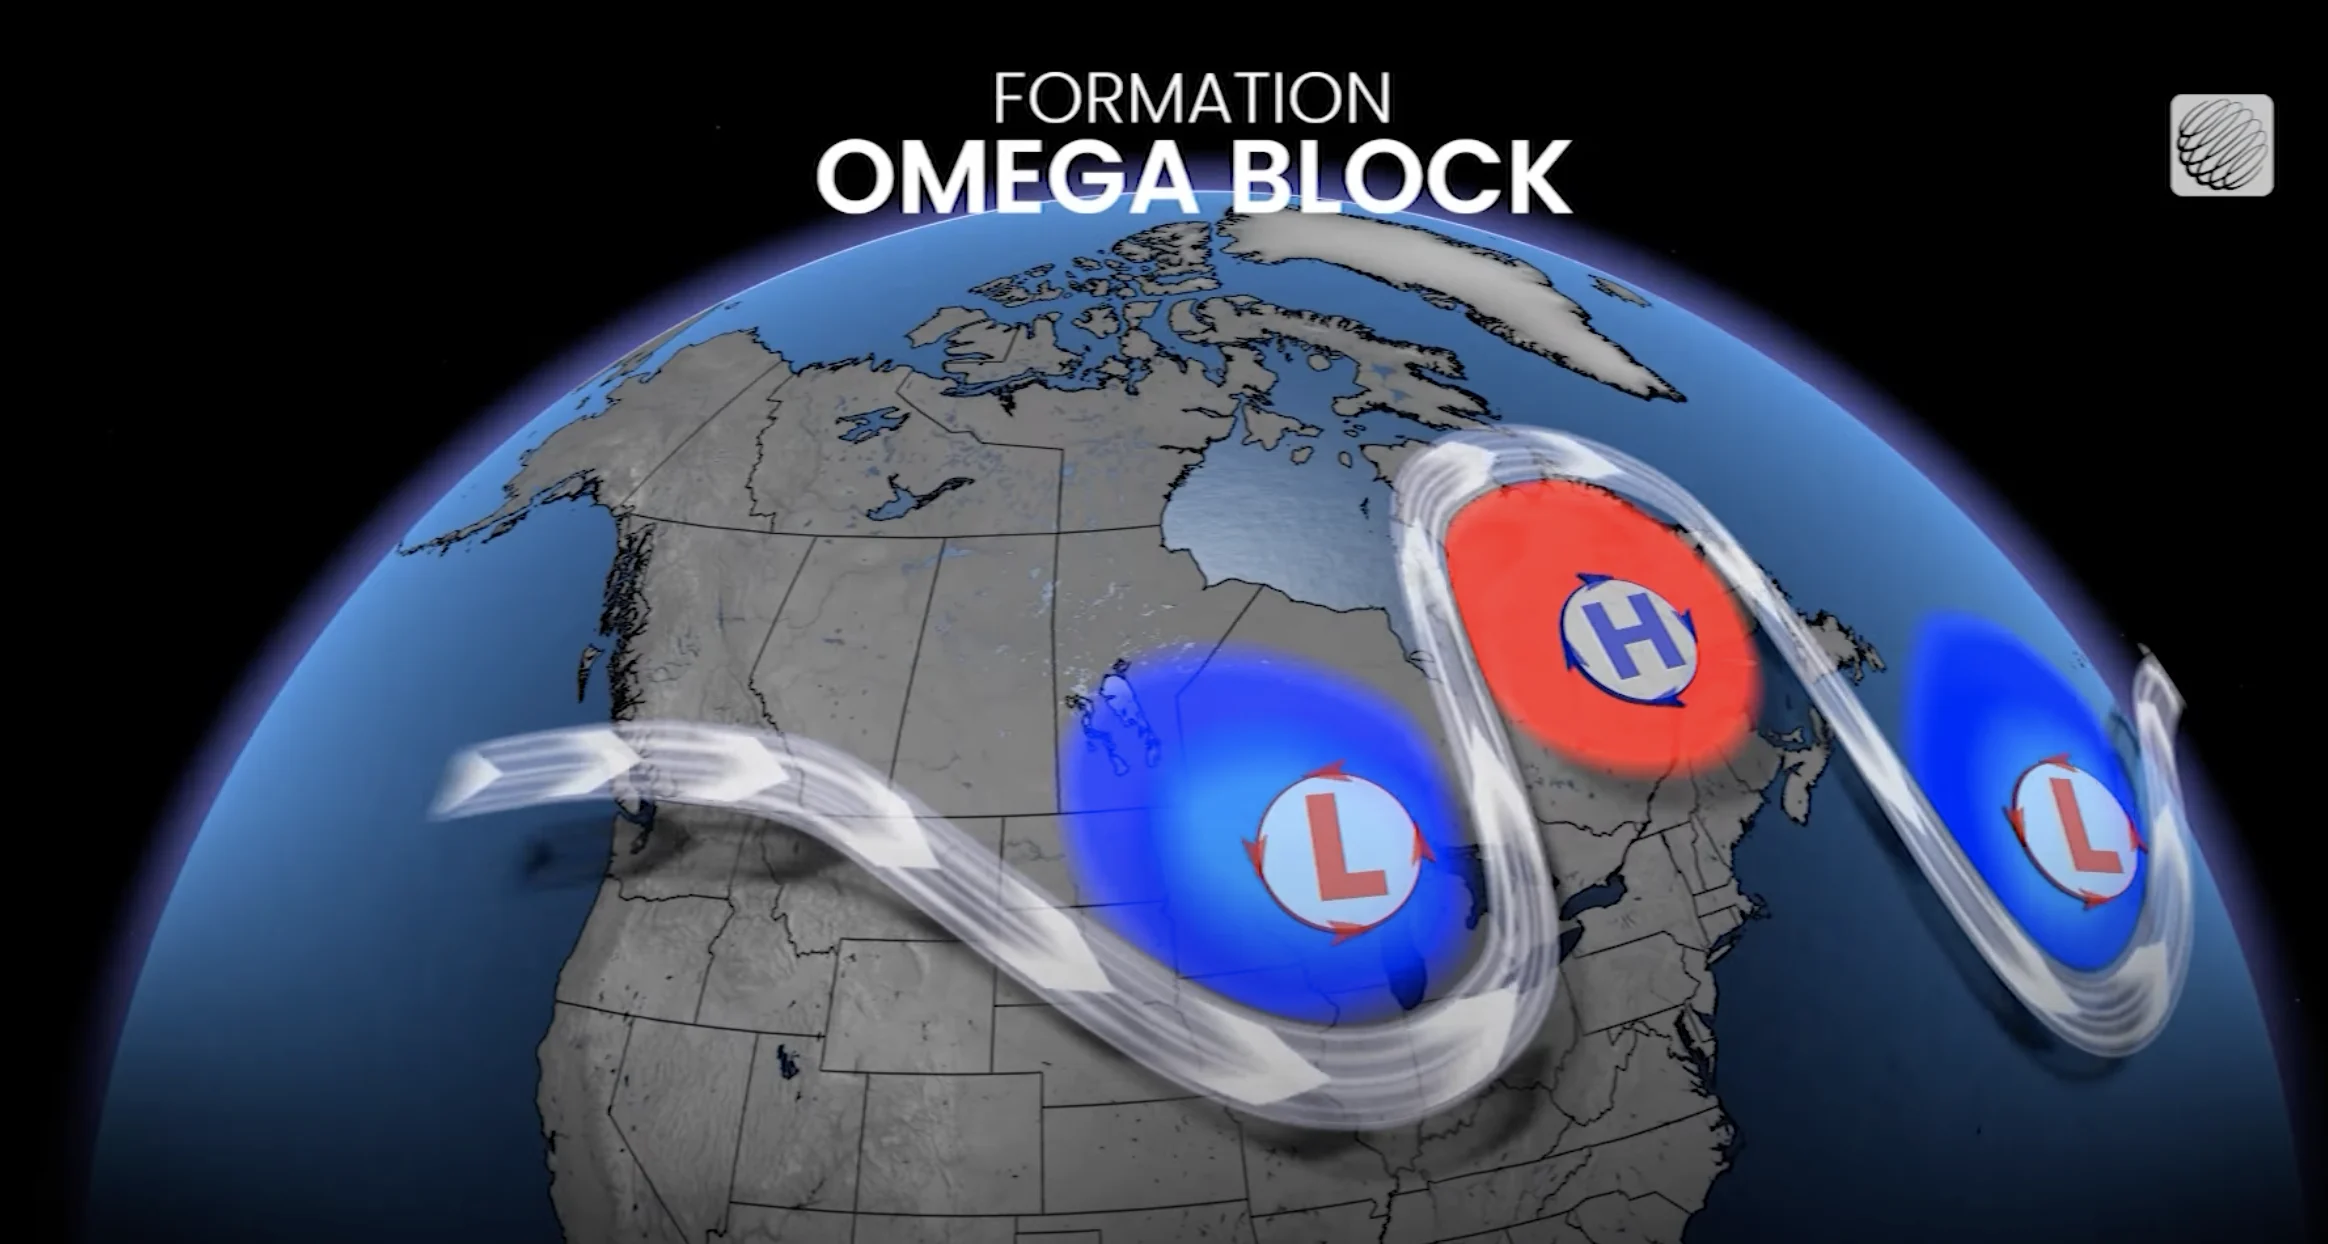 Explainer - Omega Block Formation